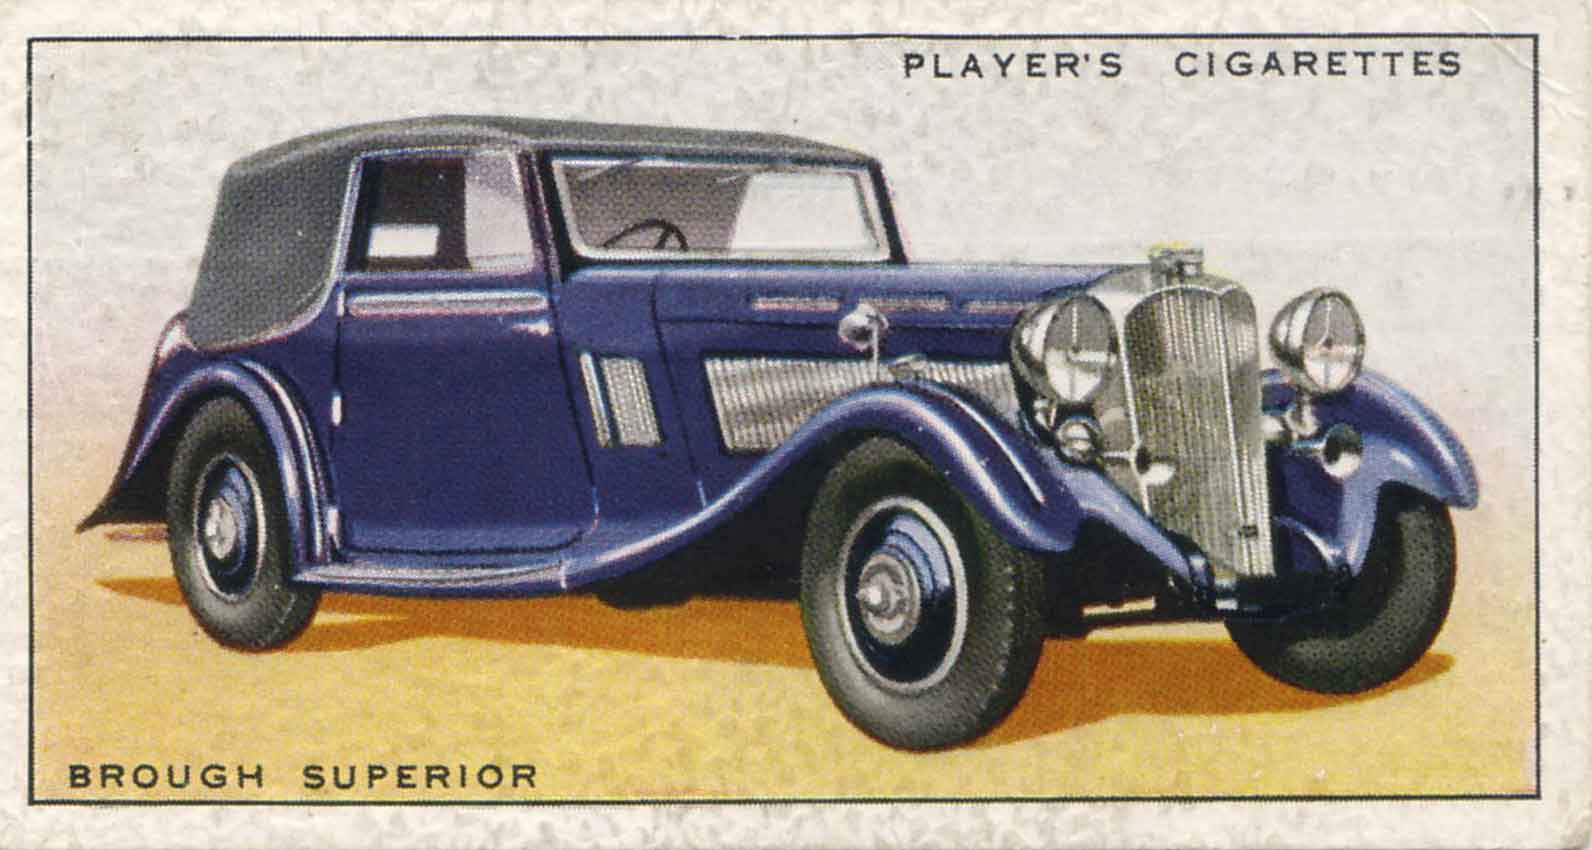 Brough Superior sports car. 1937 cigarette card.